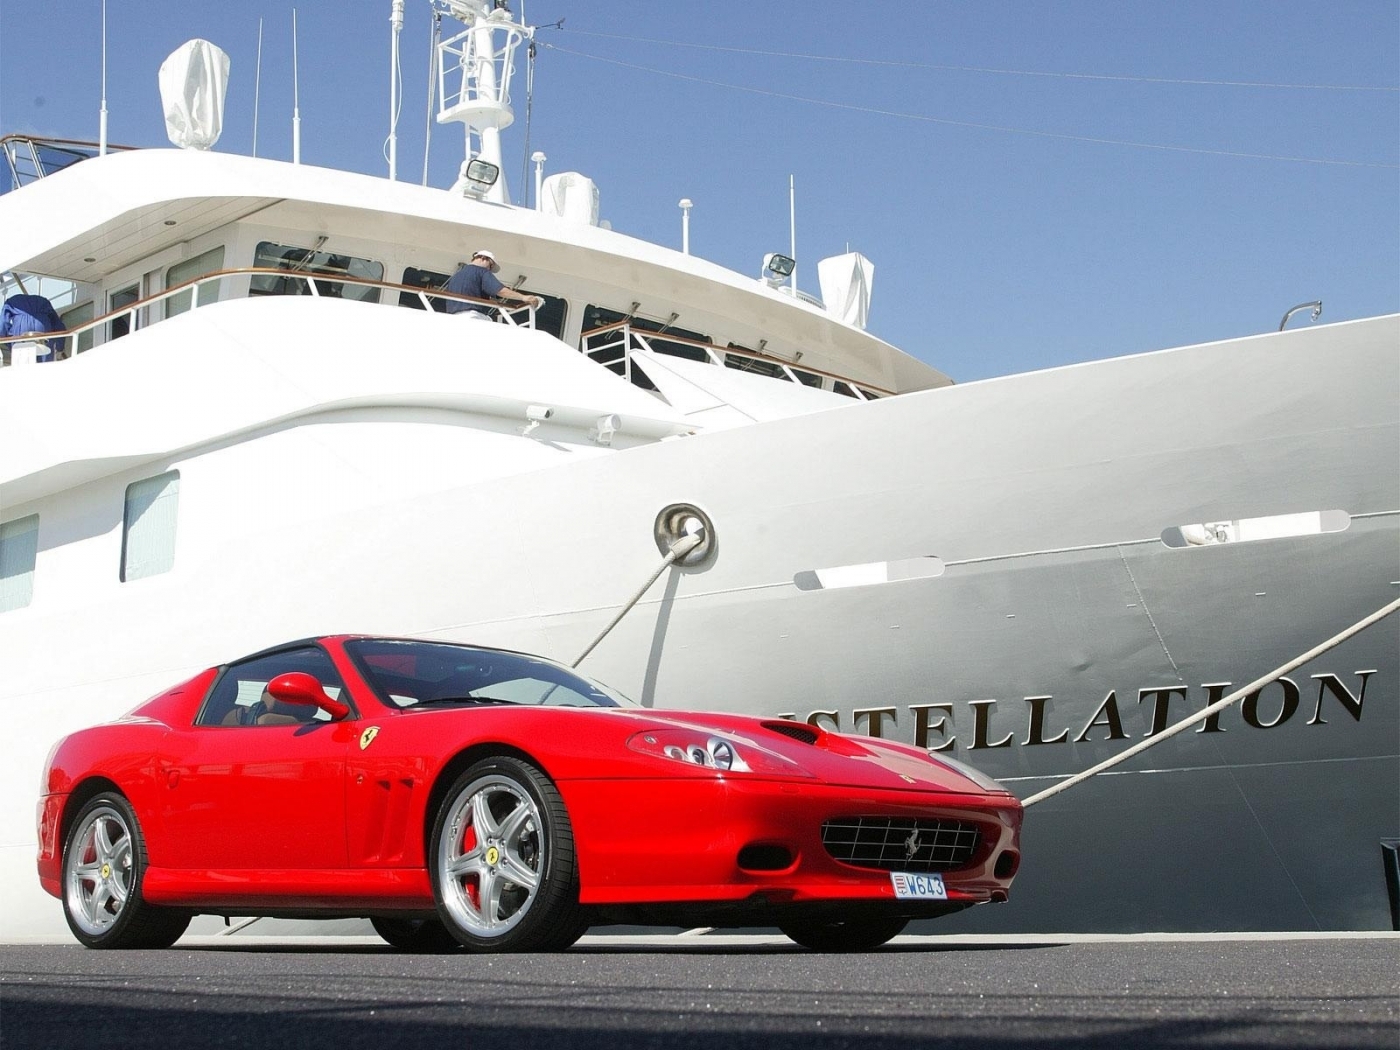 Скачать обои бесплатно Феррари (Ferrari), Машины, Транспорт, Яхты картинка на рабочий стол ПК